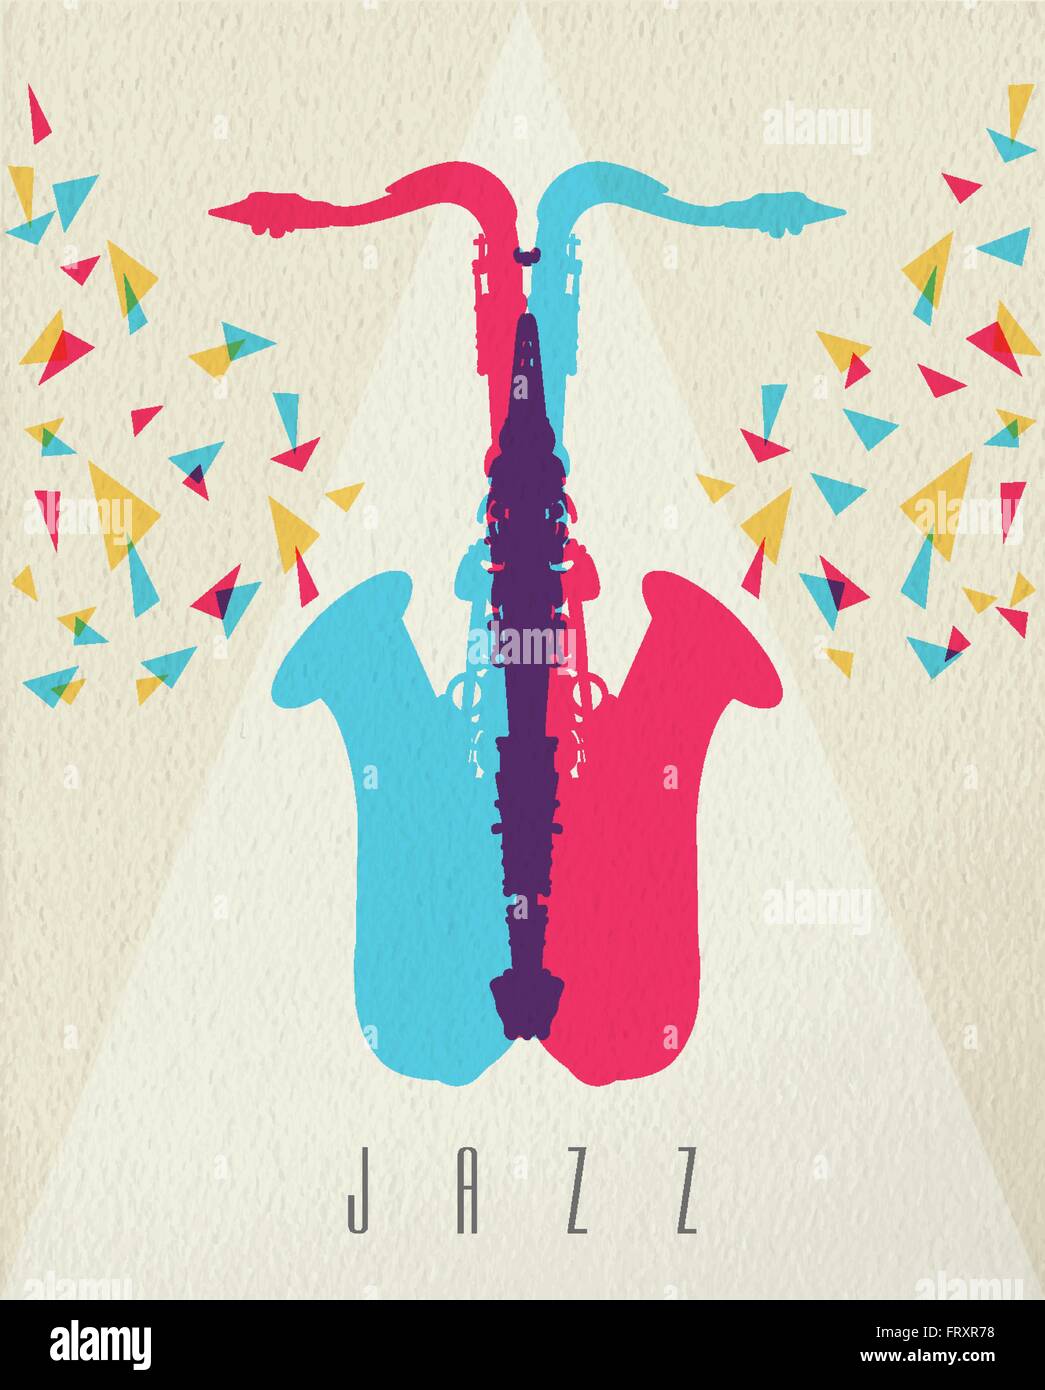 Concept de la musique Jazz, saxophone instrument silhouette en style de couleur sur fond de texture. Vecteur EPS10. Illustration de Vecteur